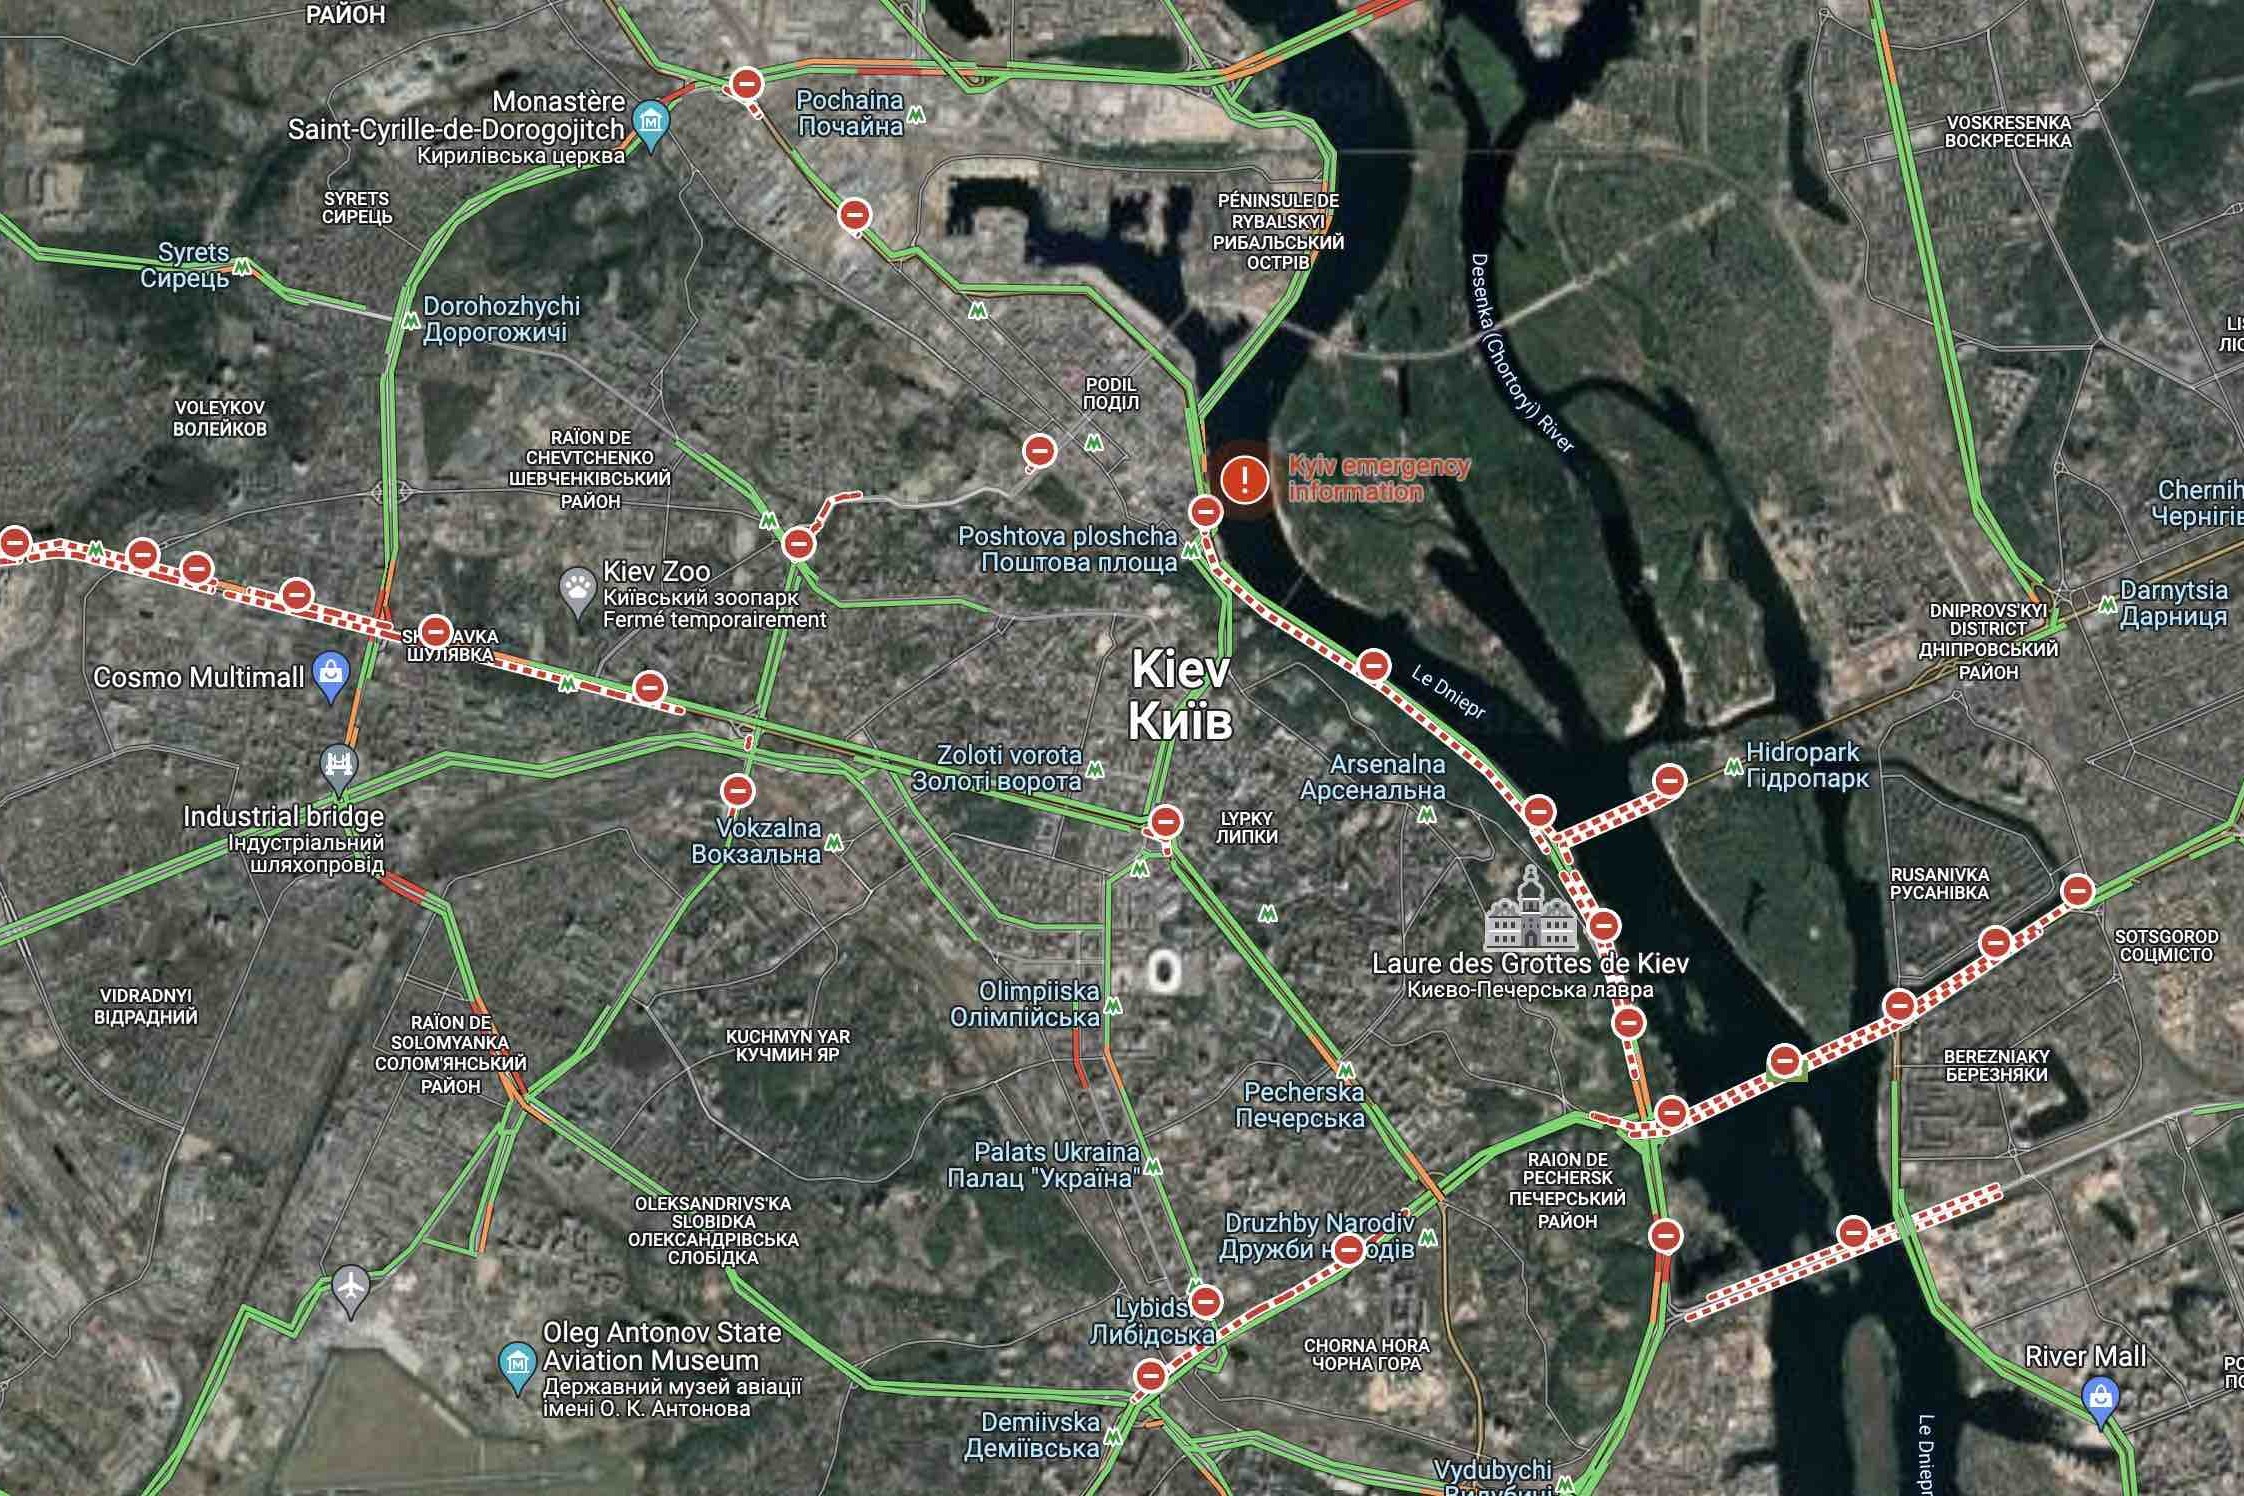 研究人員利用Google Maps 和雷達圖像追踪俄羅斯軍隊行踪